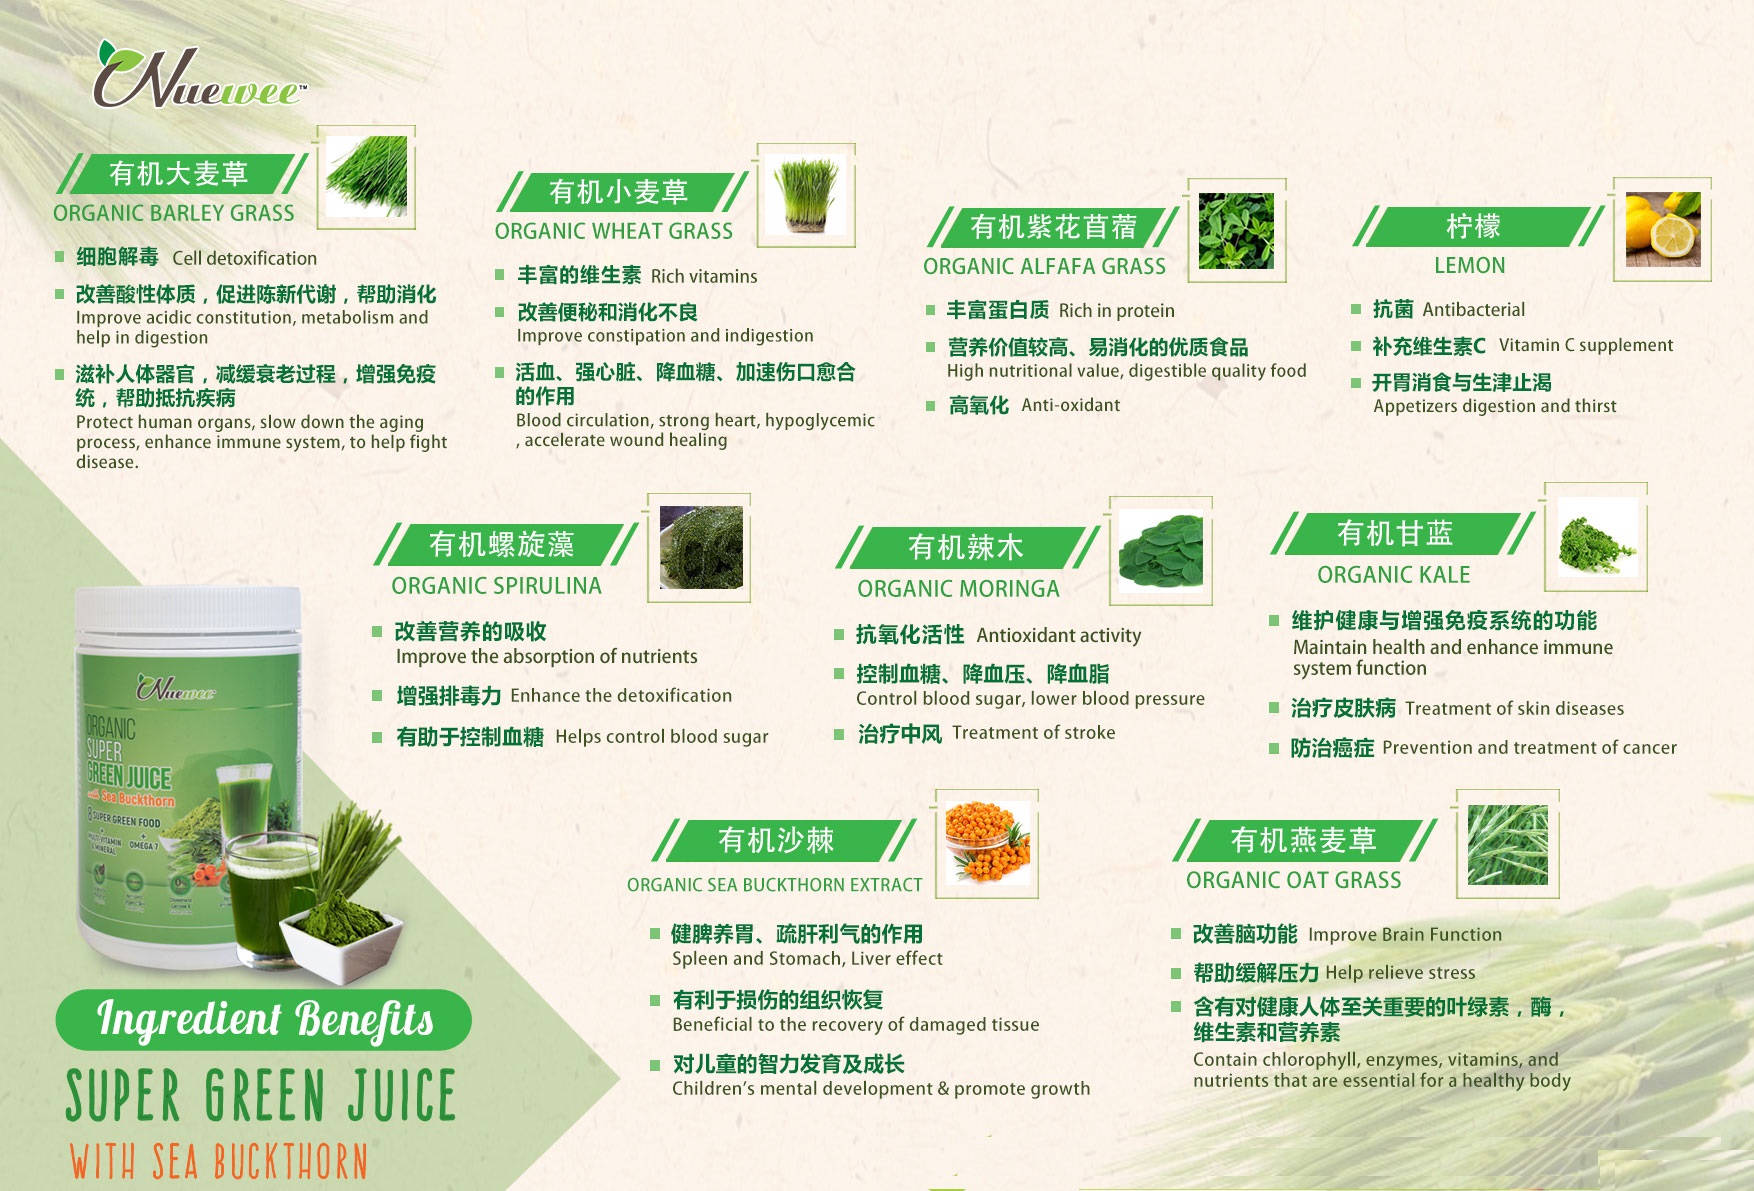 Ingredients-of-Nuewee-Organic-Super-Green- Juice-with-Sea-buckthorn.jpg